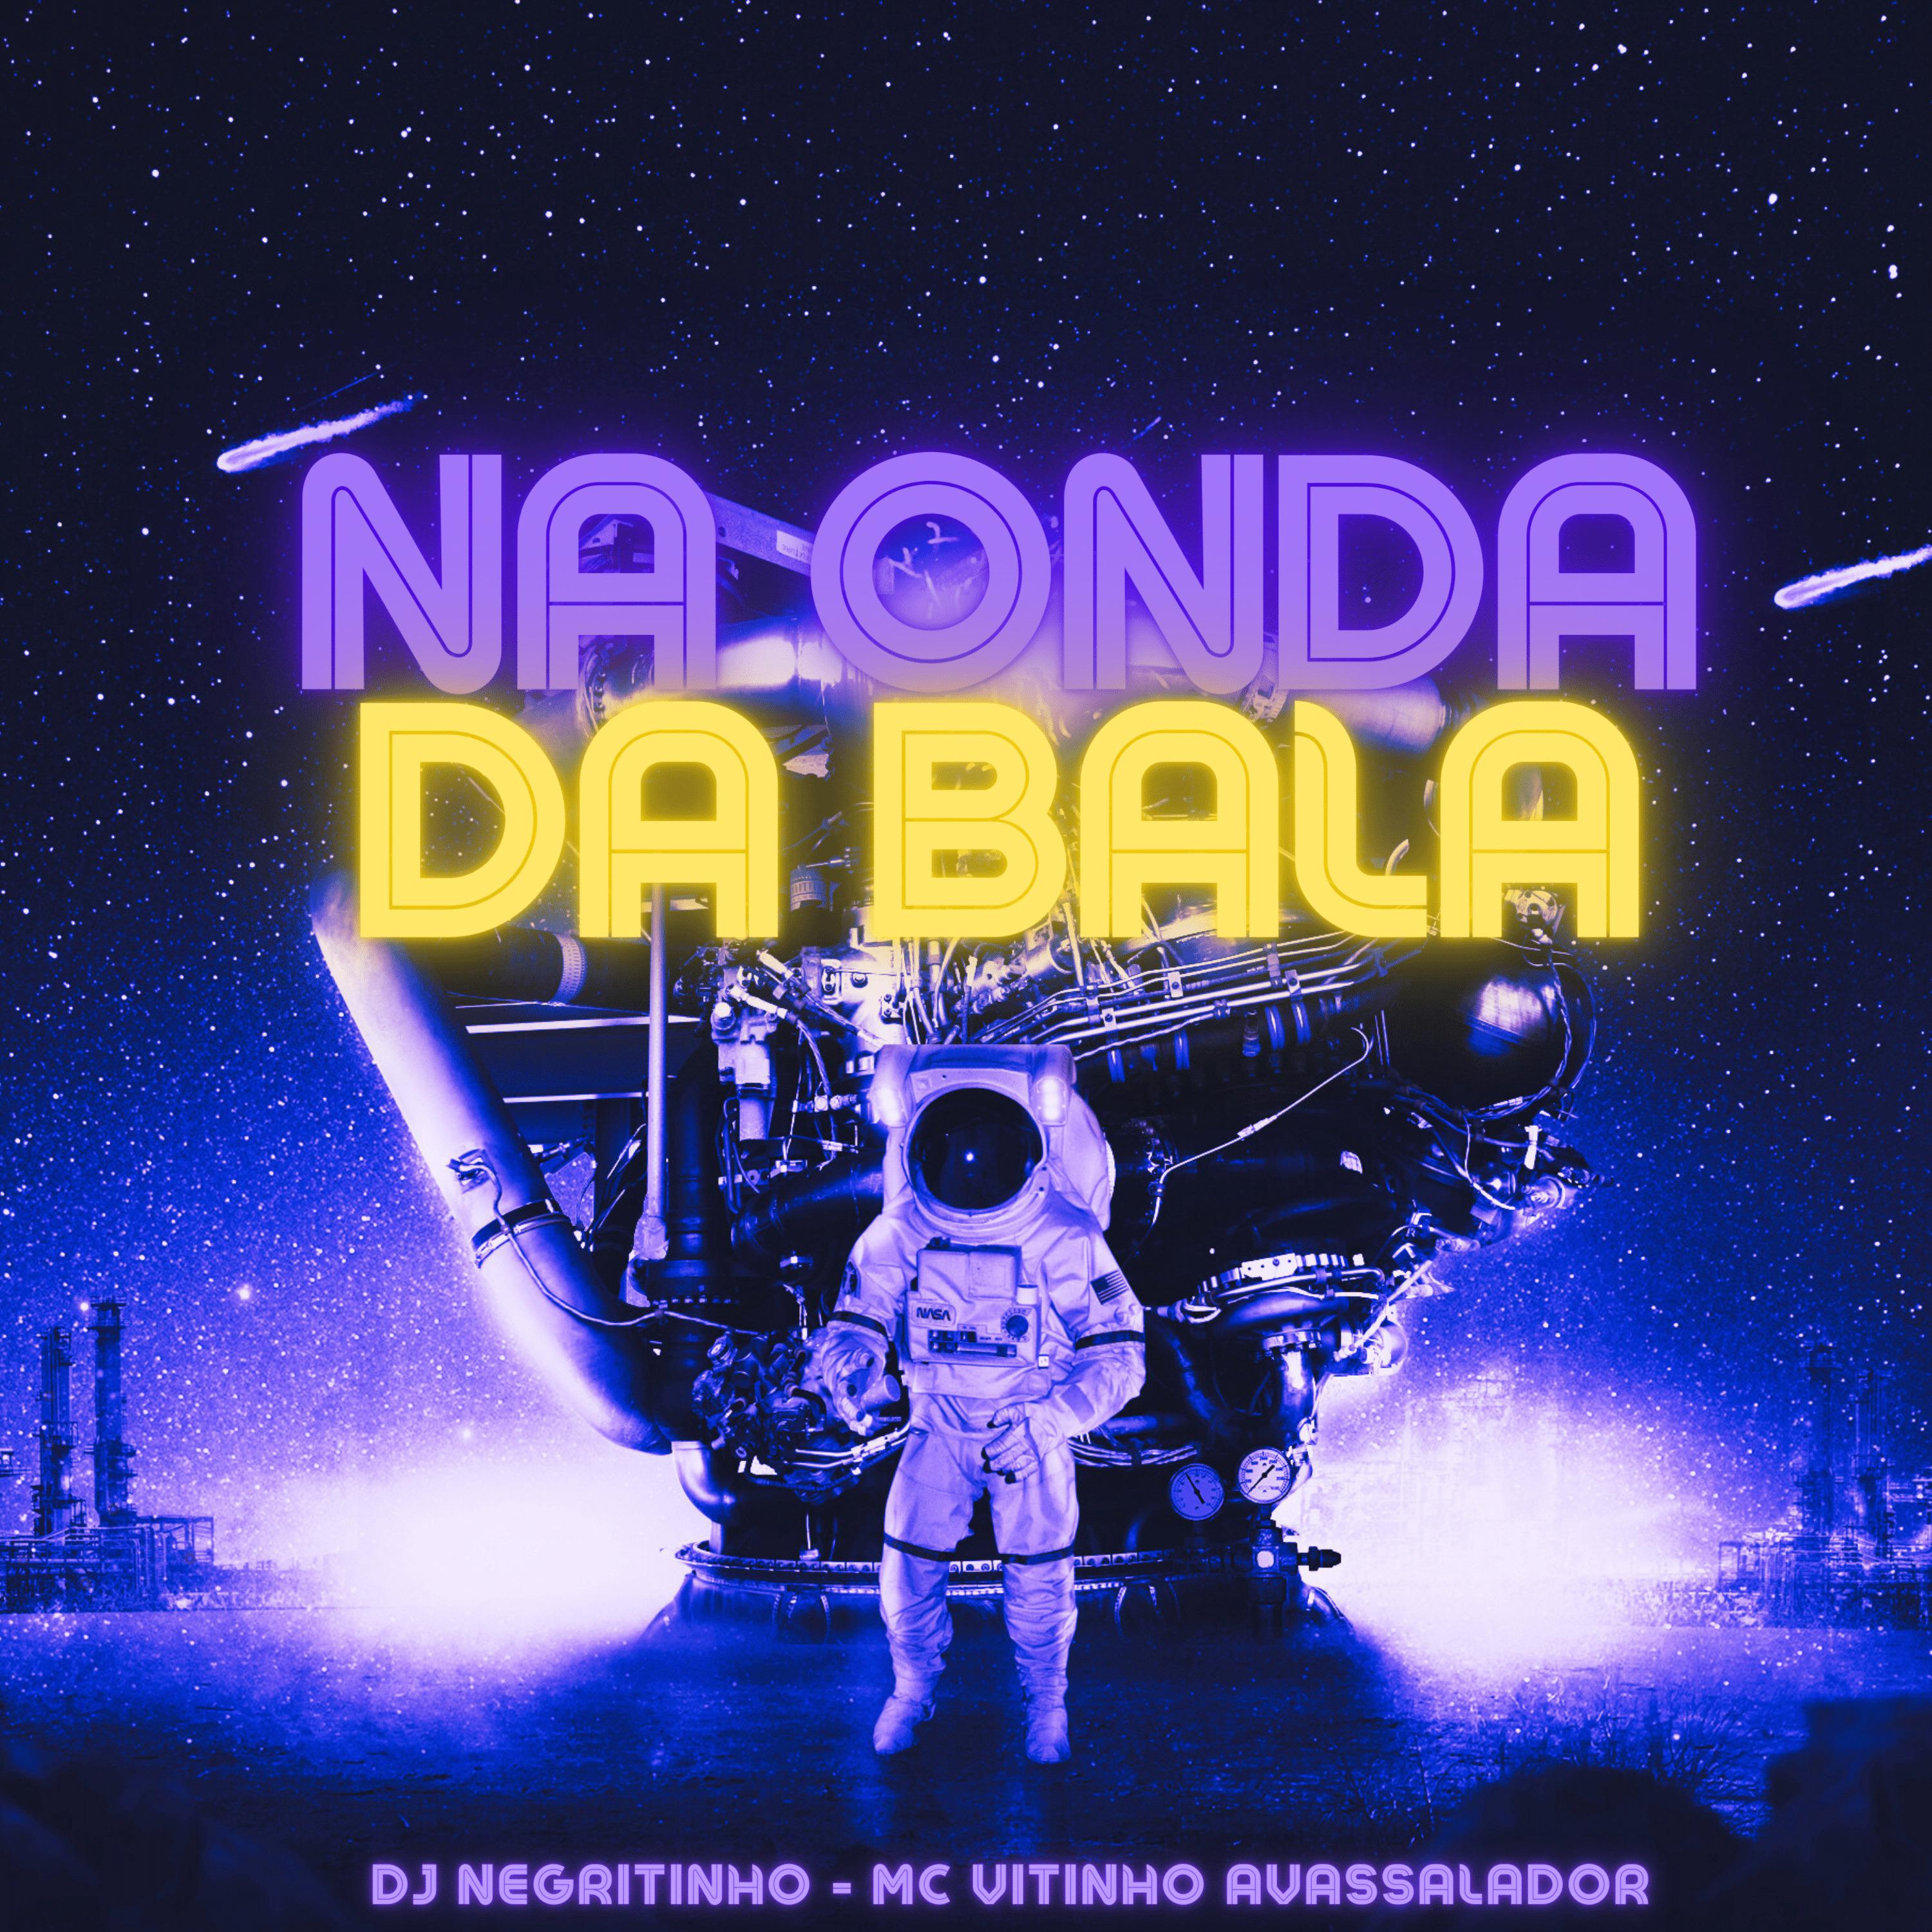 Постер альбома Na Onda da Bala